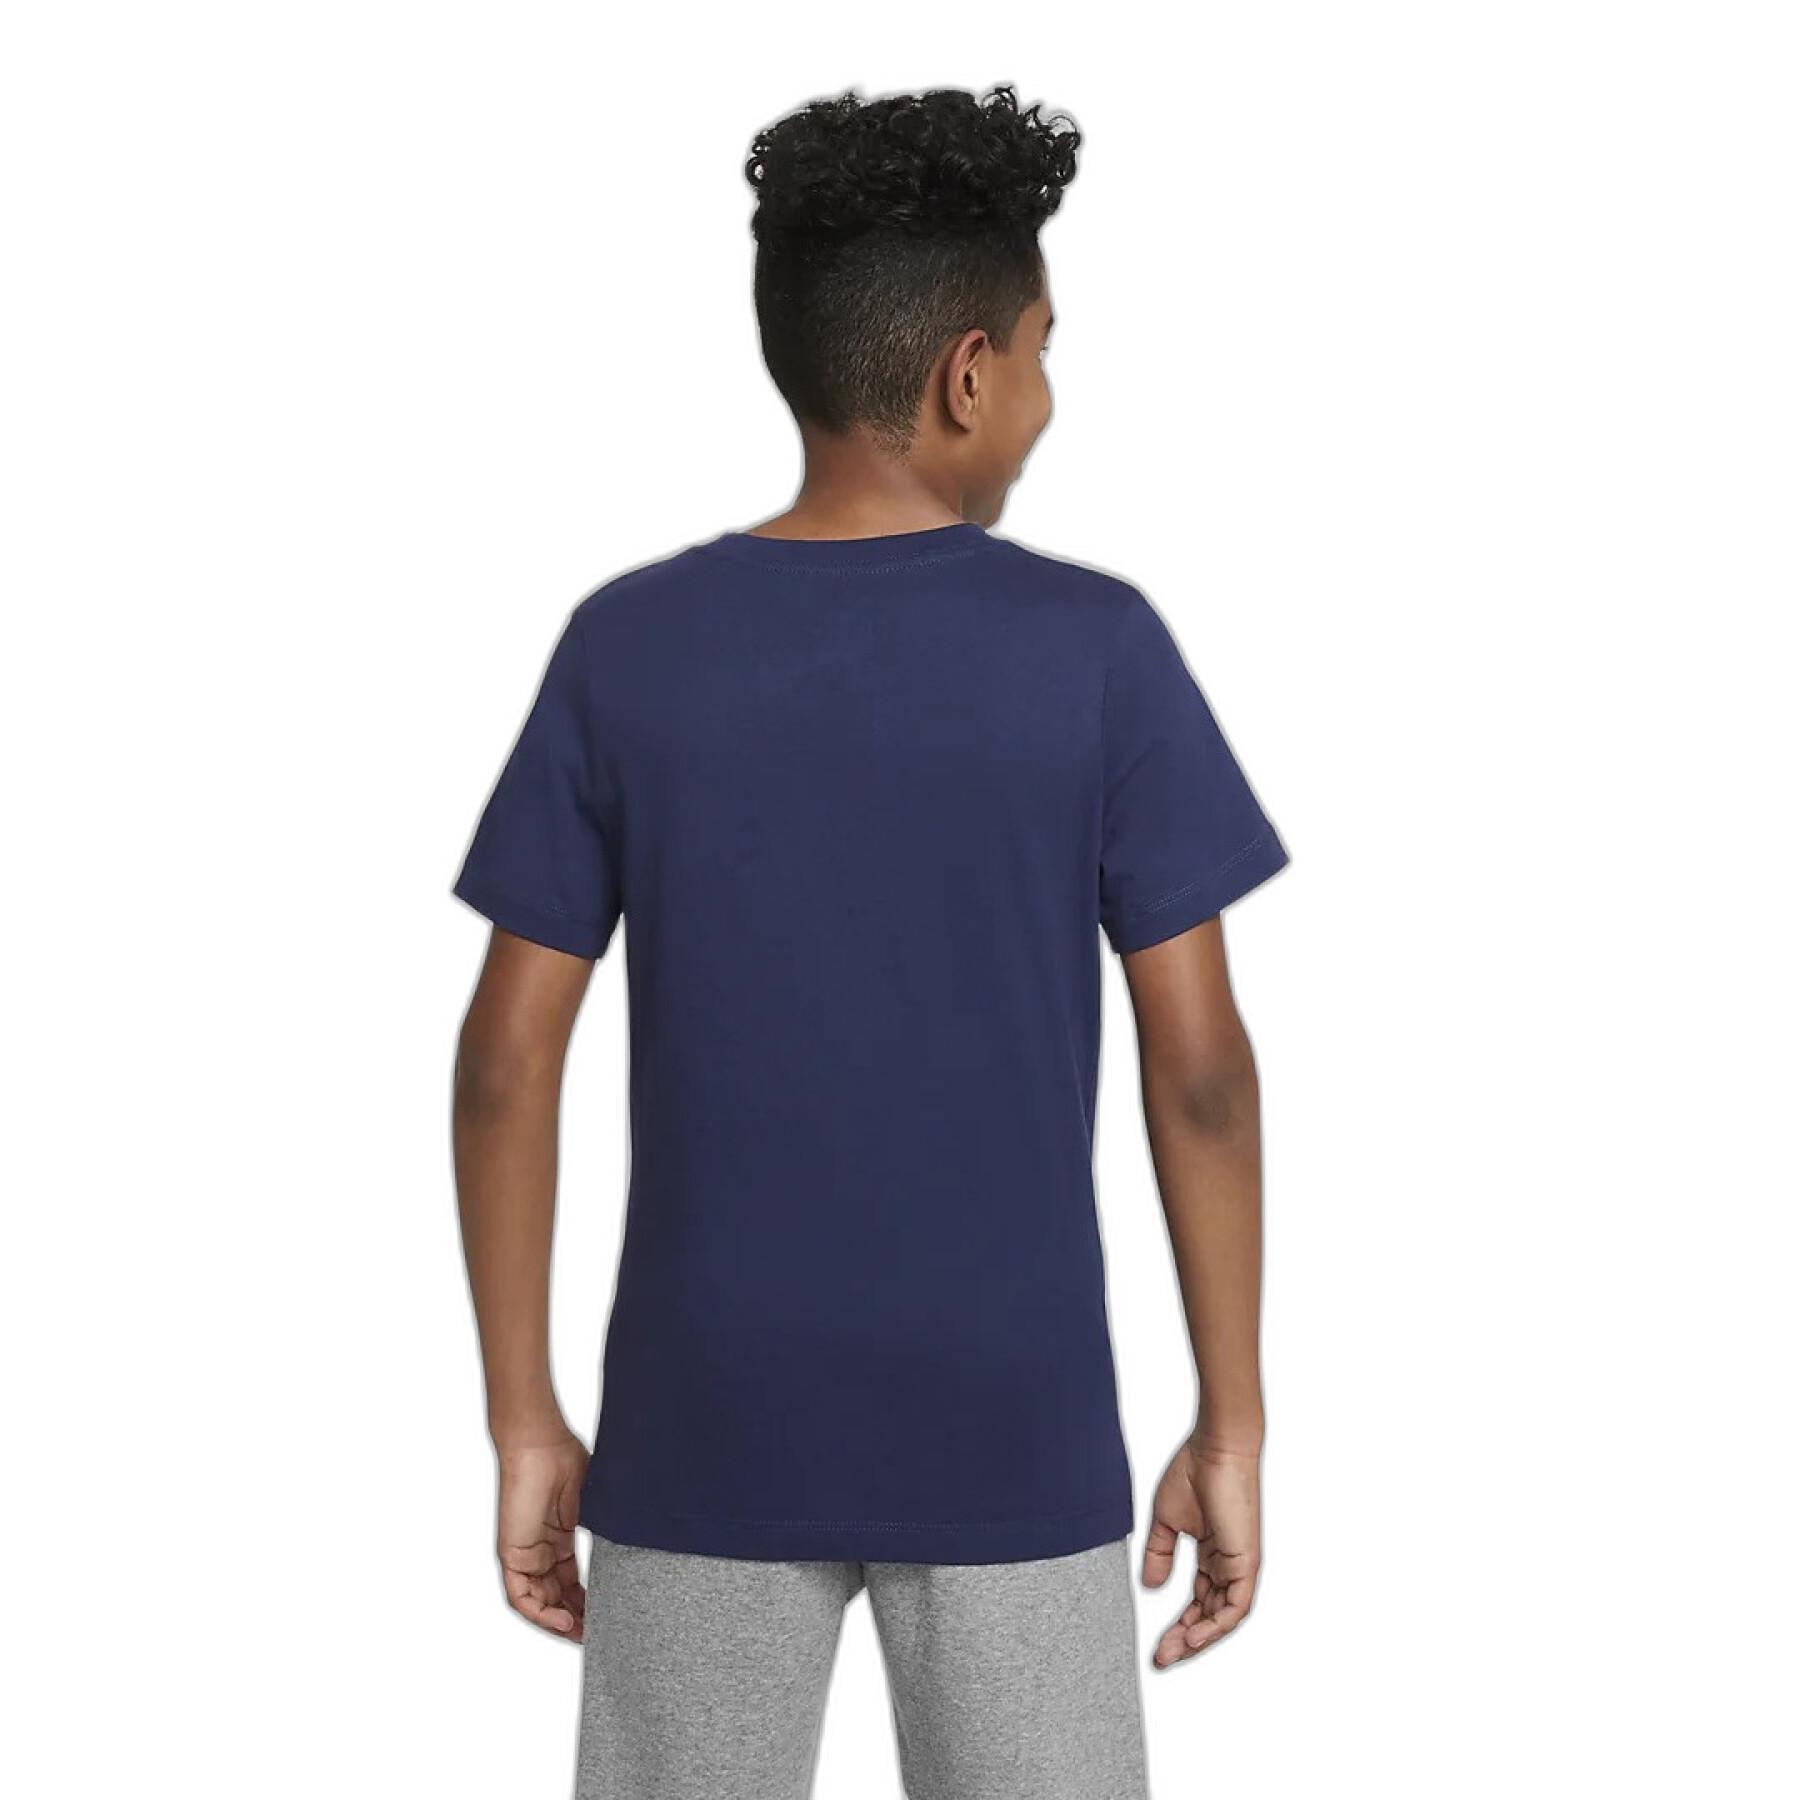 tottenham swoosh - T-shirt för barn 2022/23